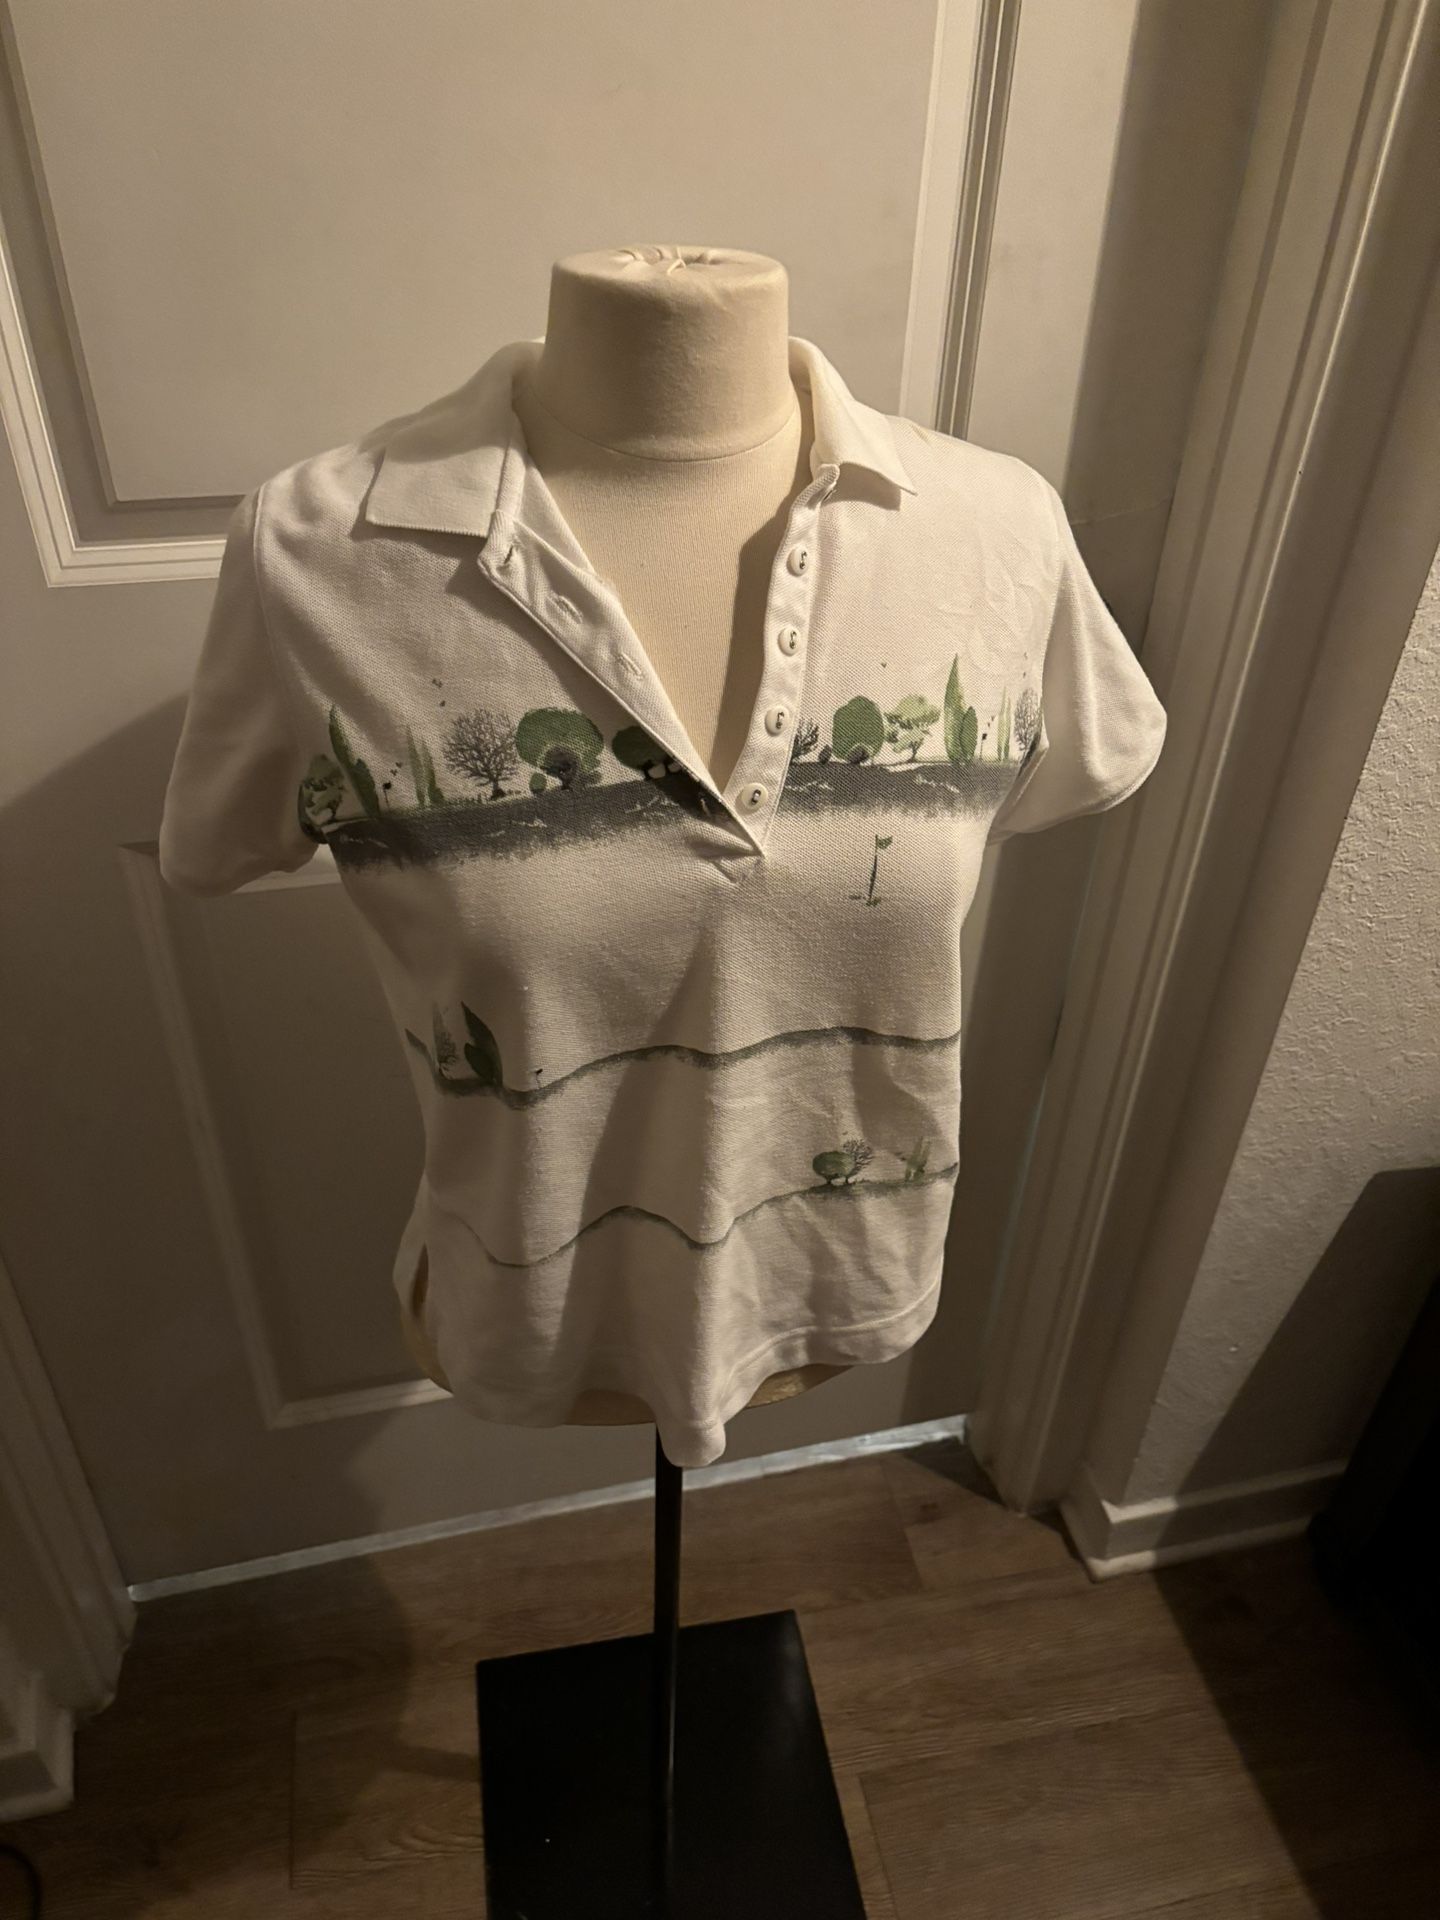 Woman’s Golf Shirt From Glorias Closet 